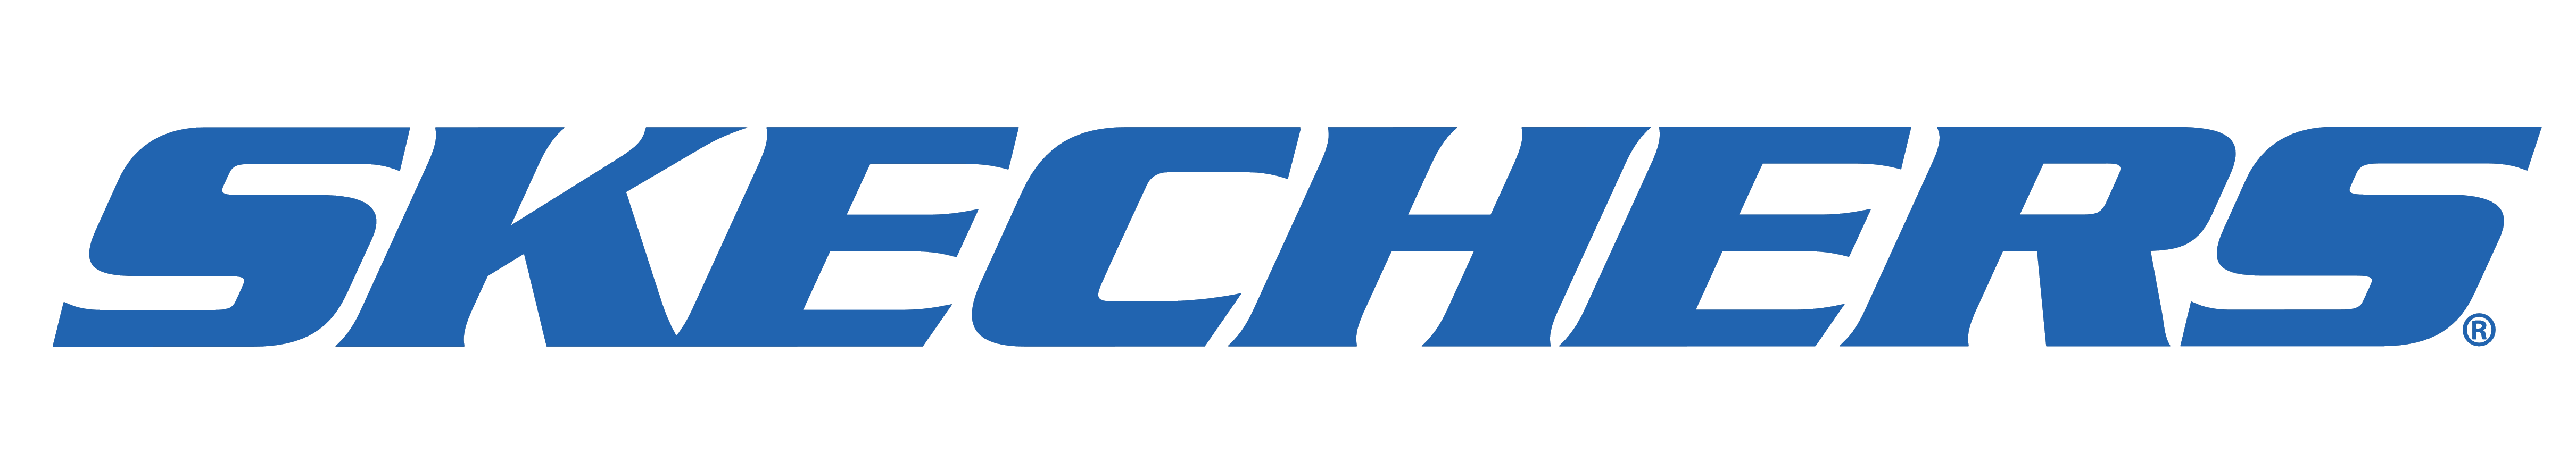 Skechers Brand Logo